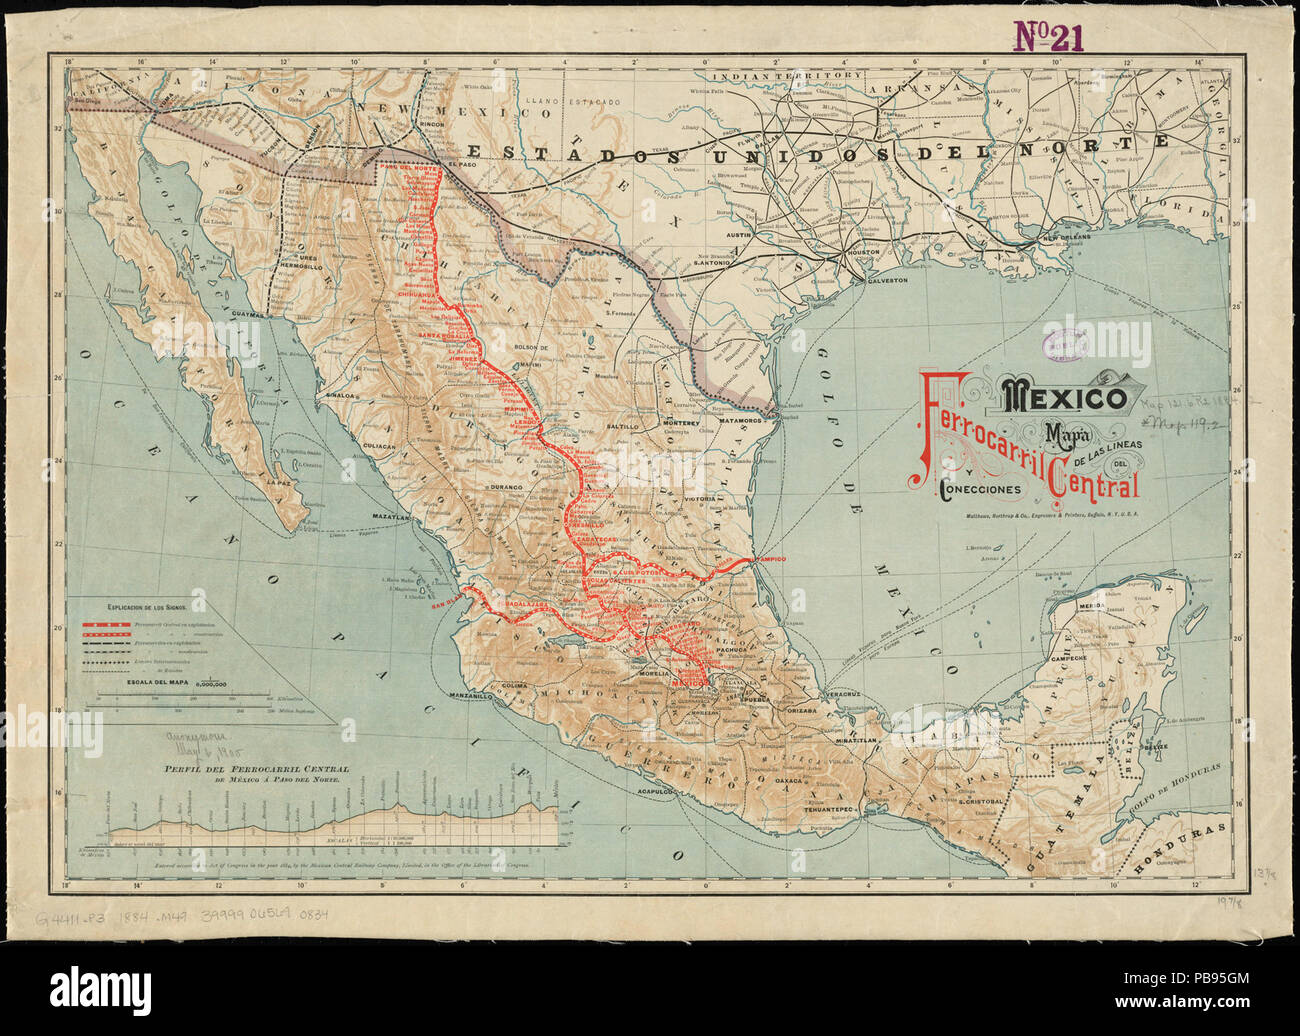 1021 Mexico, mapa de las lineas del Ferrocarril Central Mexicano y conecciones (14169898874) Stock Photo